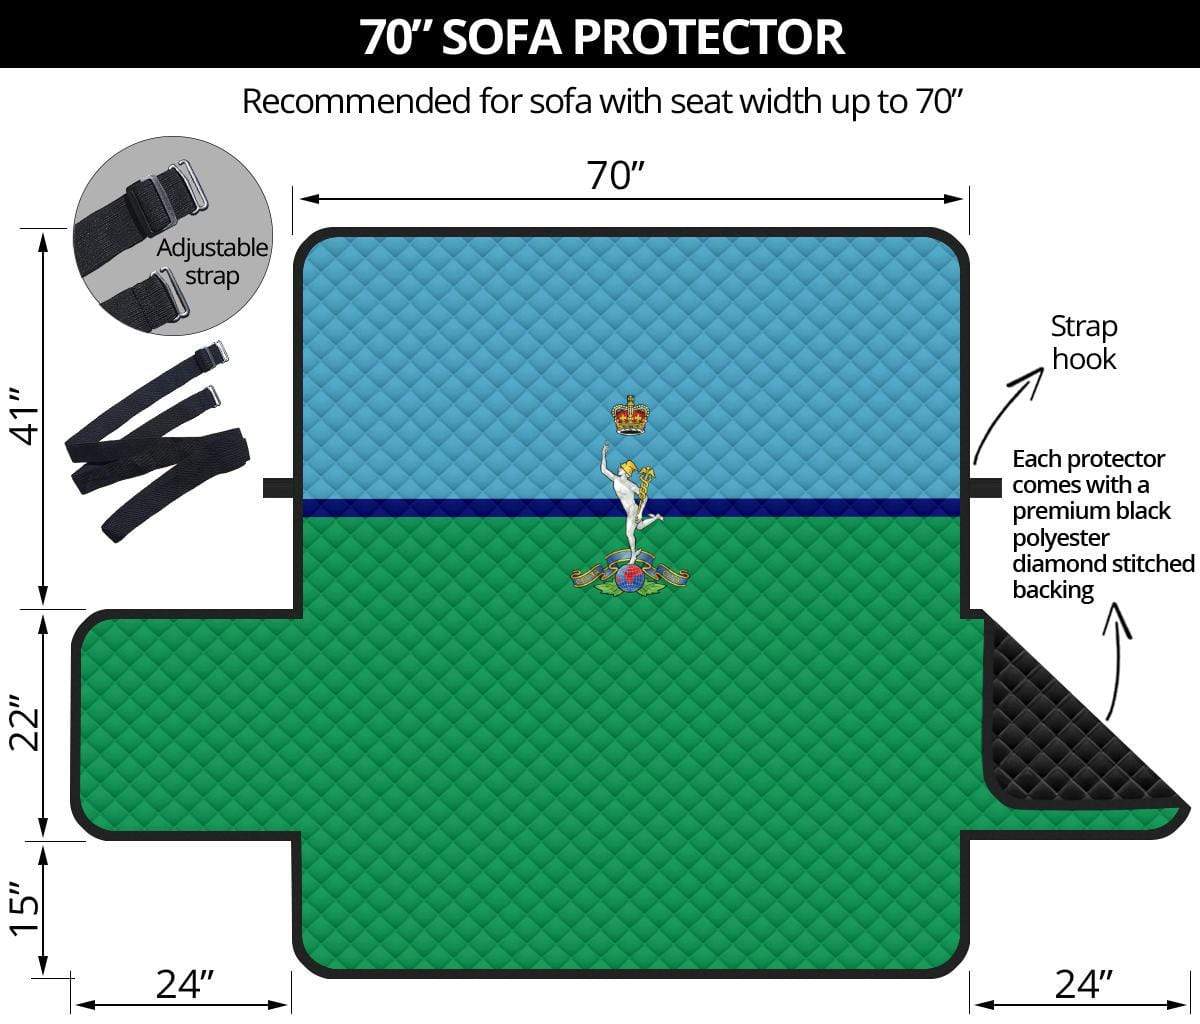 sofa protector 70" 70 Inch Sofa Royal Signals 3-Seat Sofa Protector